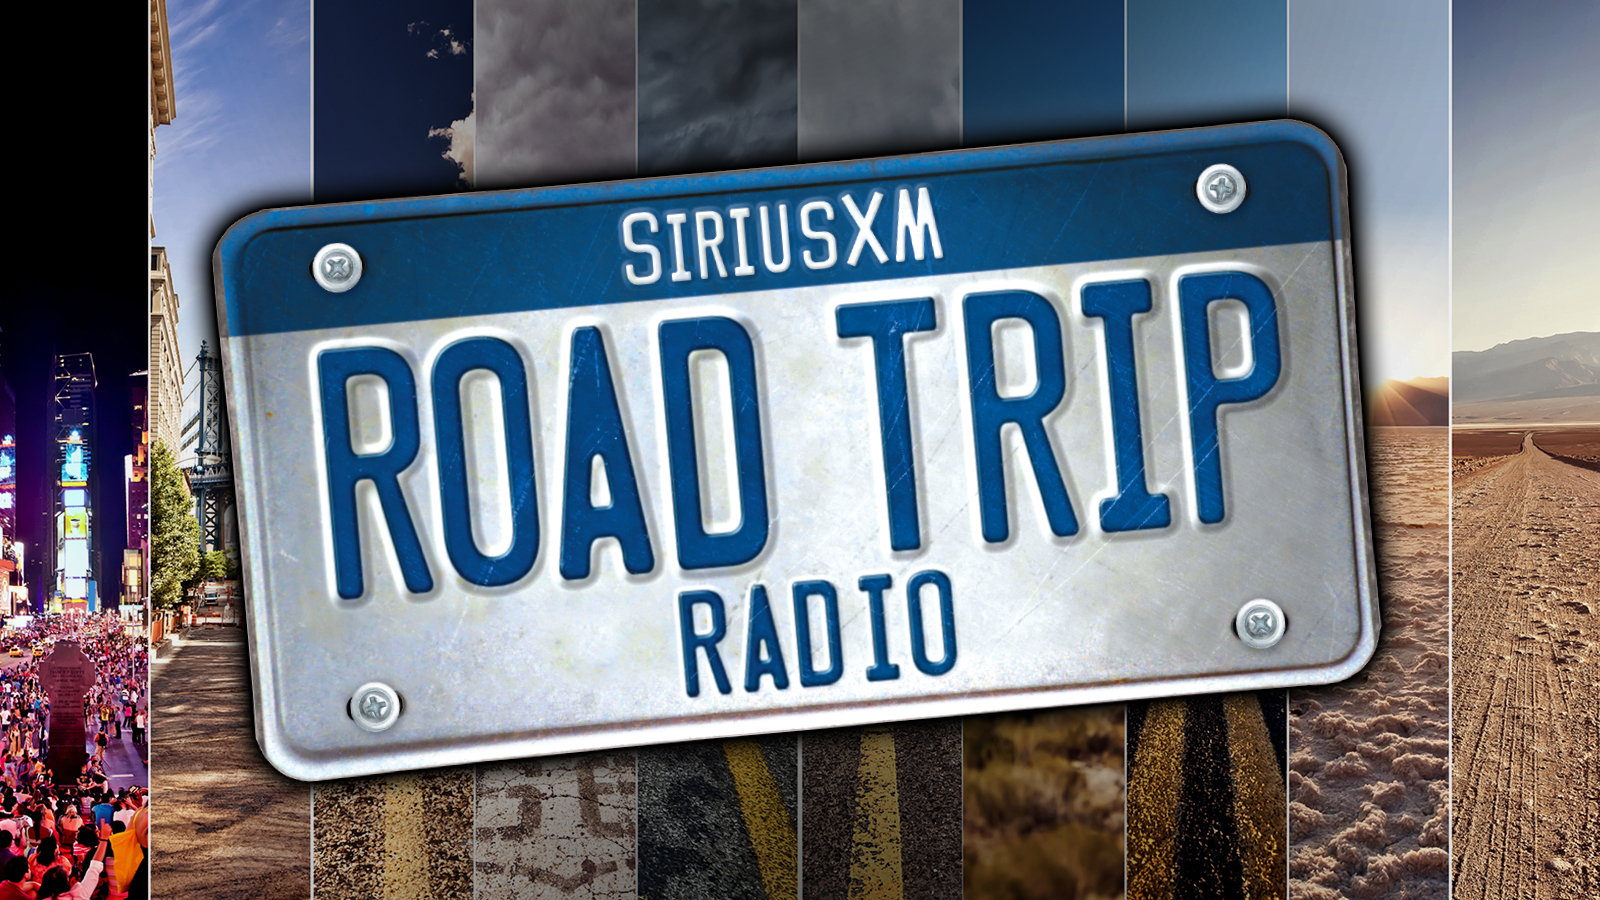 SiriusXM Road Trip Radio